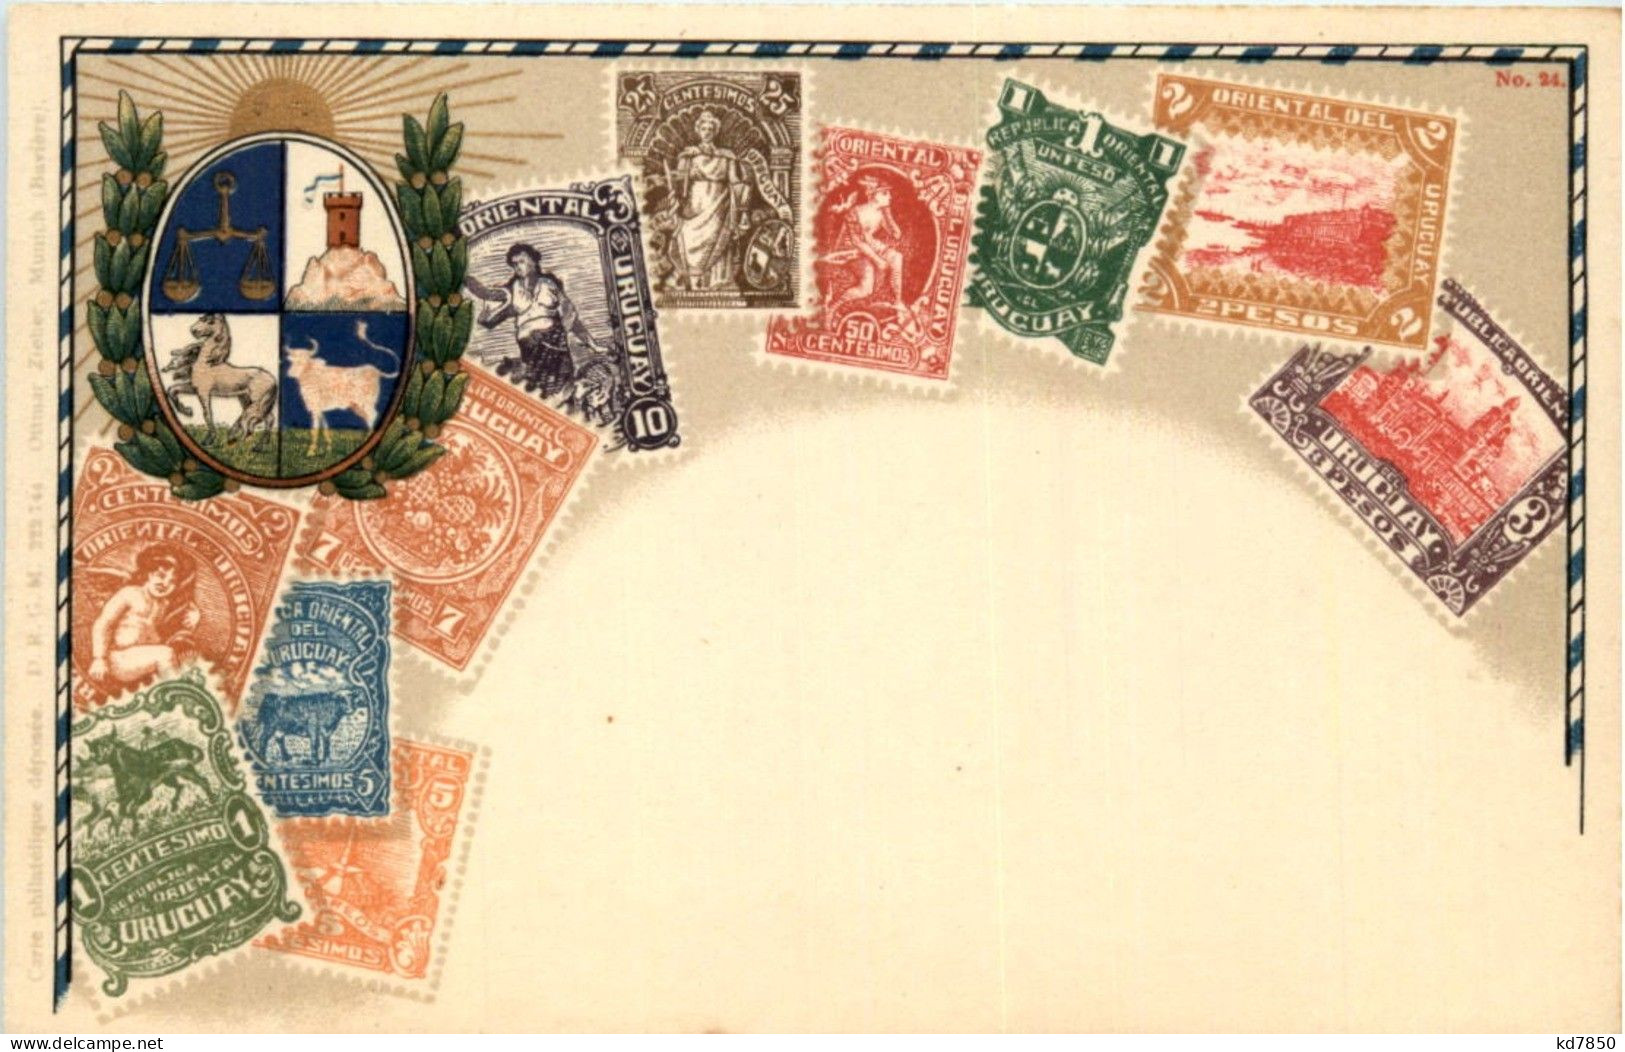 Uruquay - Briefmarken - Litho - Briefmarken (Abbildungen)